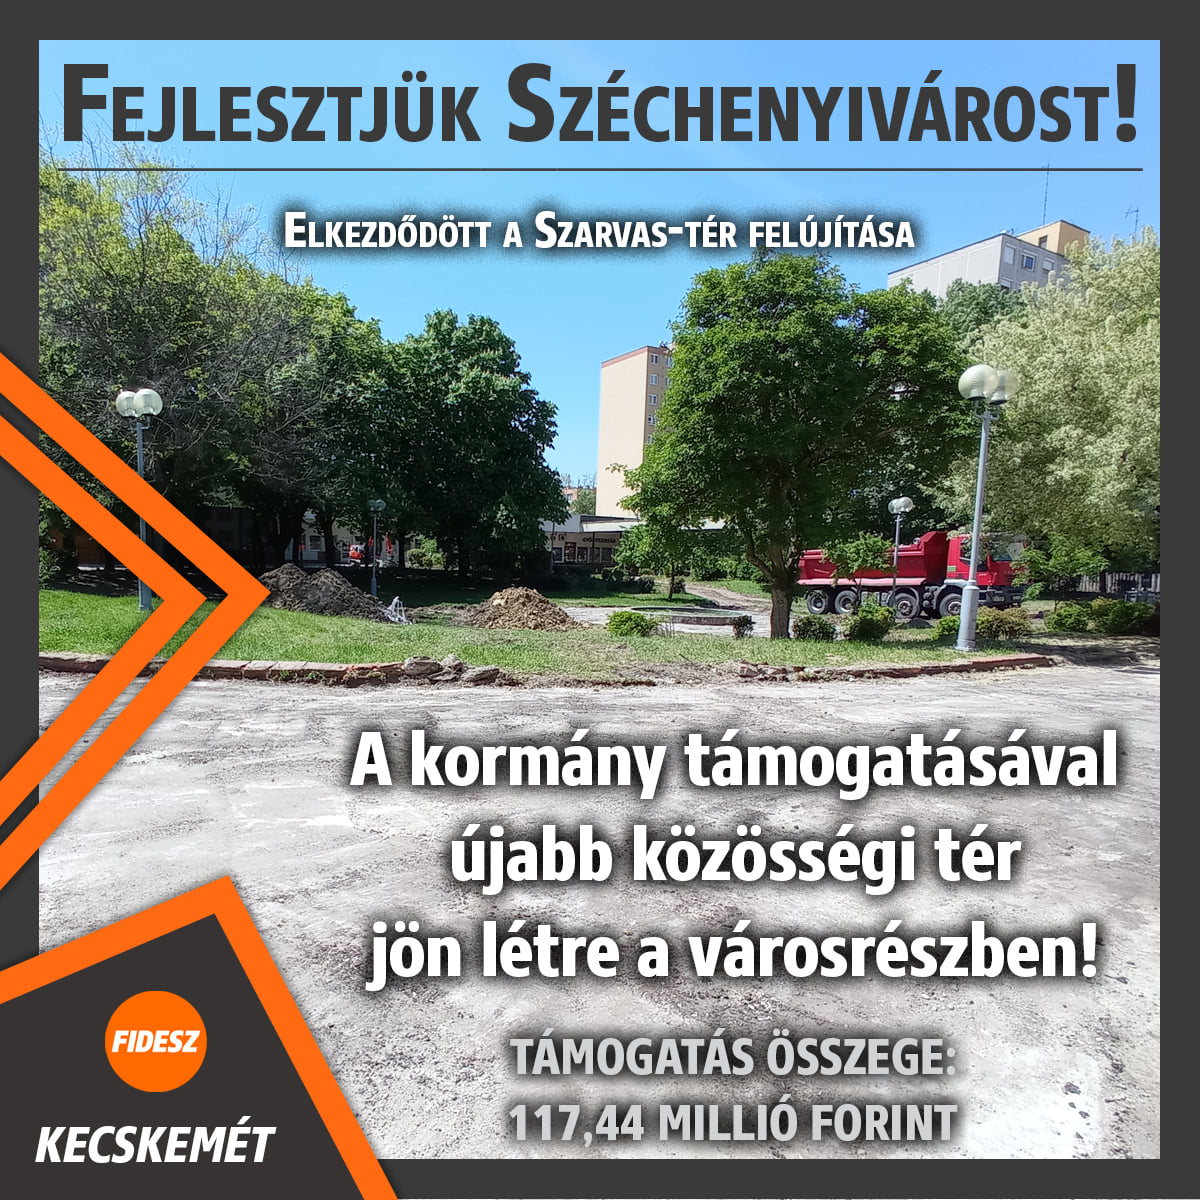 Fejlesztjük Széchenyivárost! A kormány támogatásával újabb közösségi tér jön létre a városrészben.